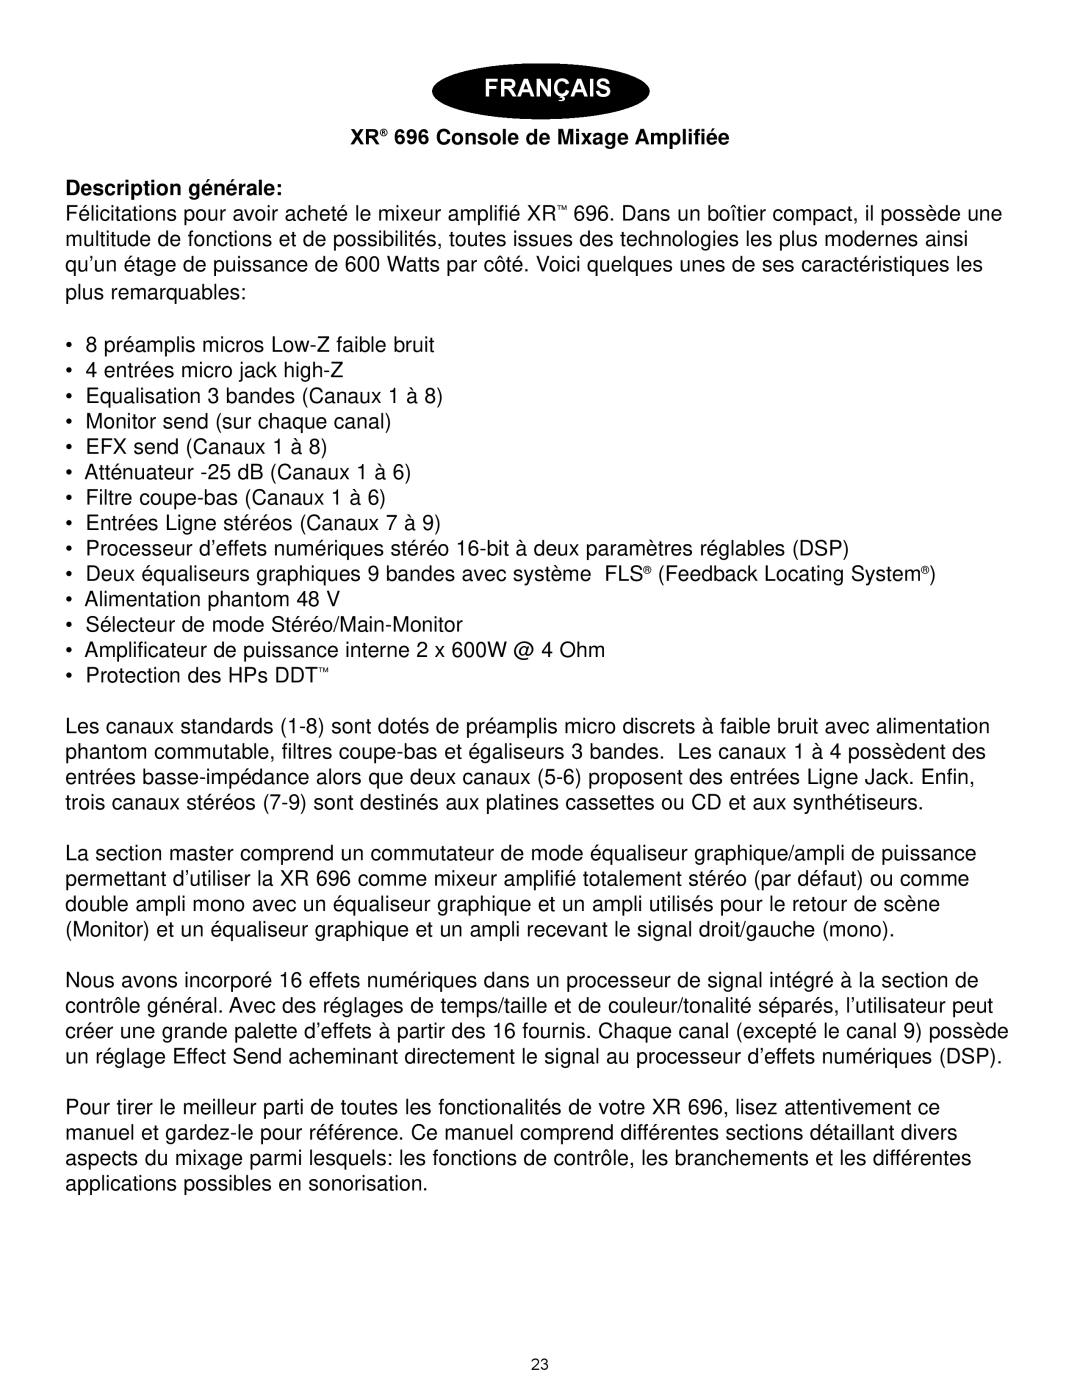 Peavey manual Français, XR 696 Console de Mixage Amplifiée Description générale 